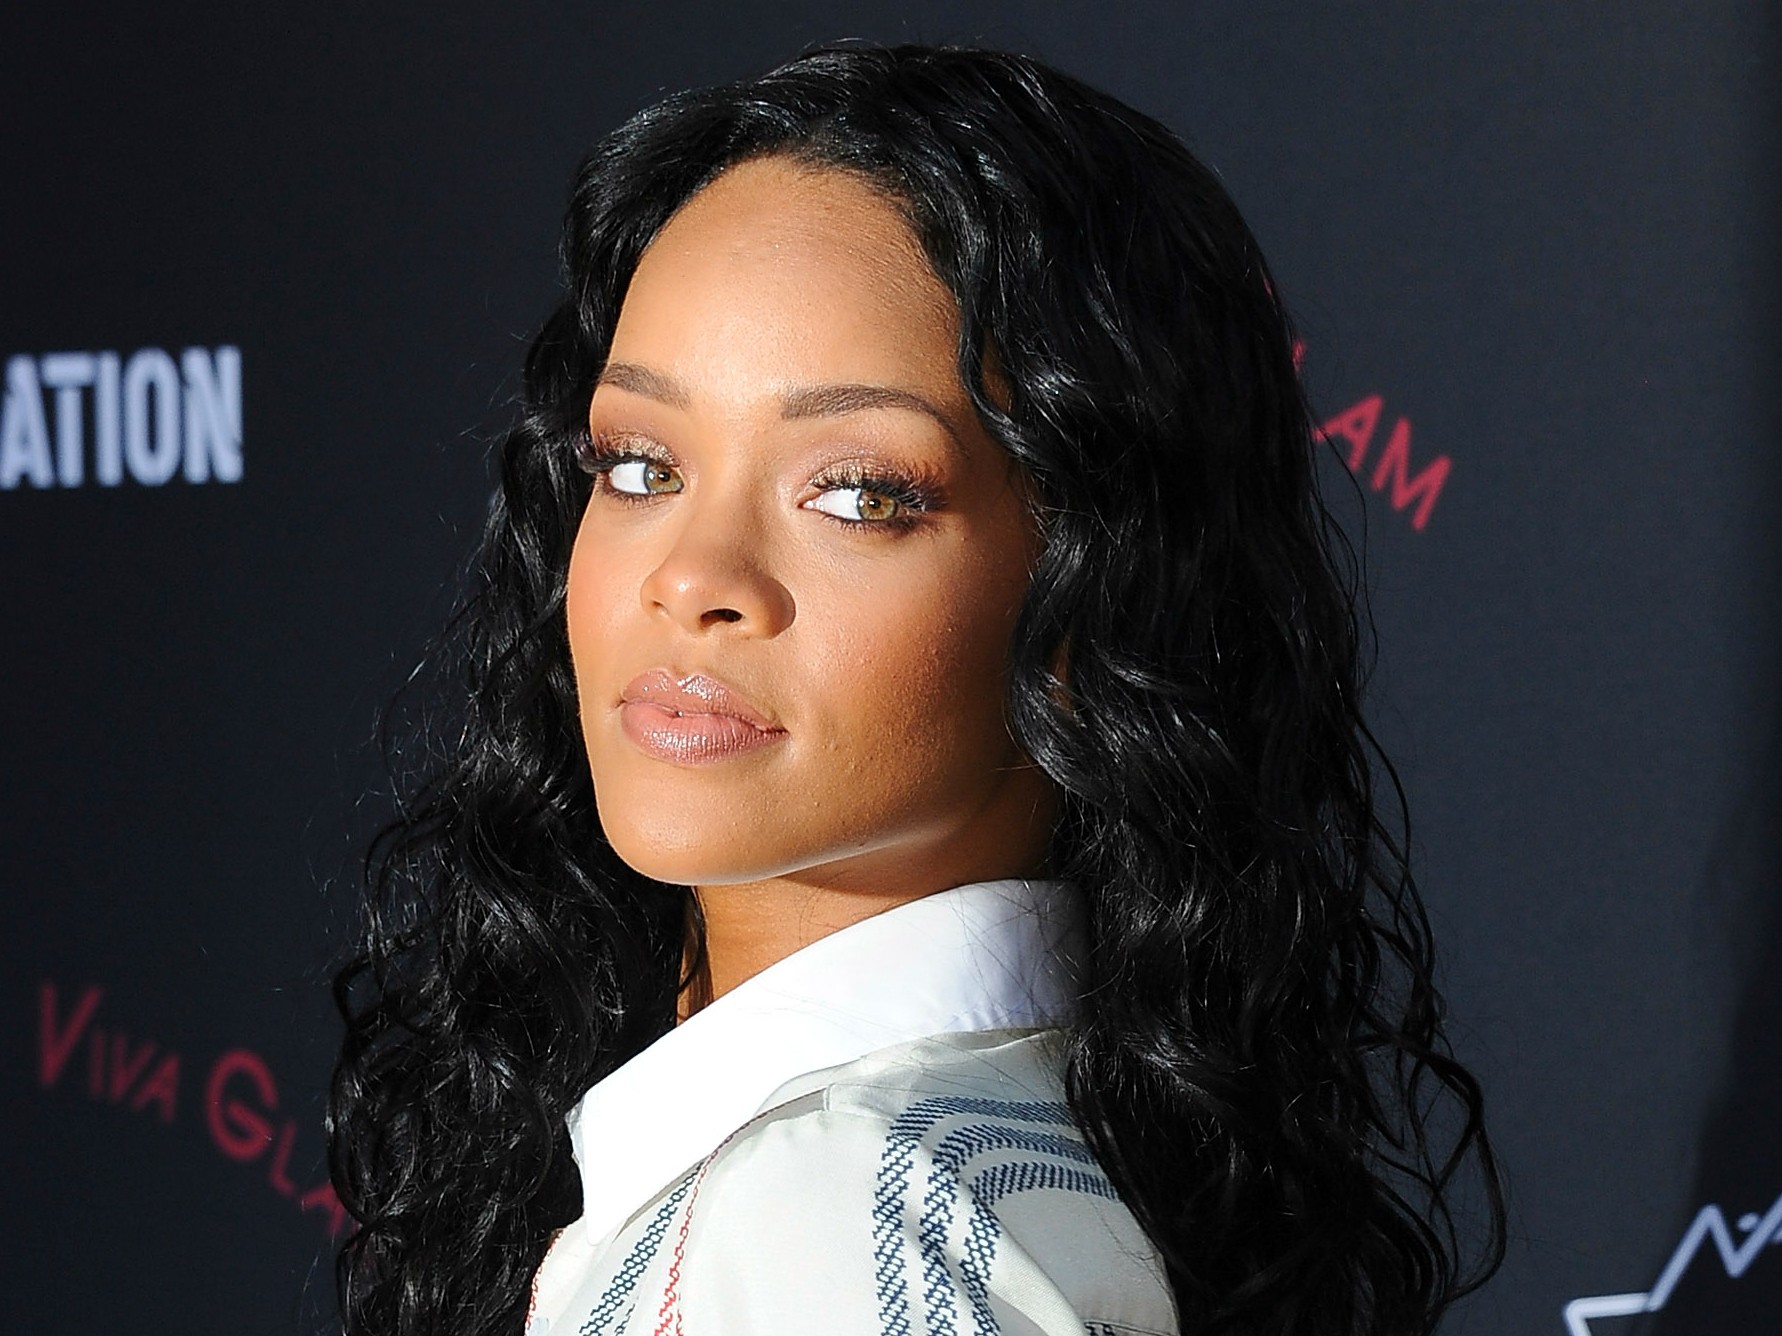 A cantora Rihanna, de 26 anos. (Foto: Getty Images)